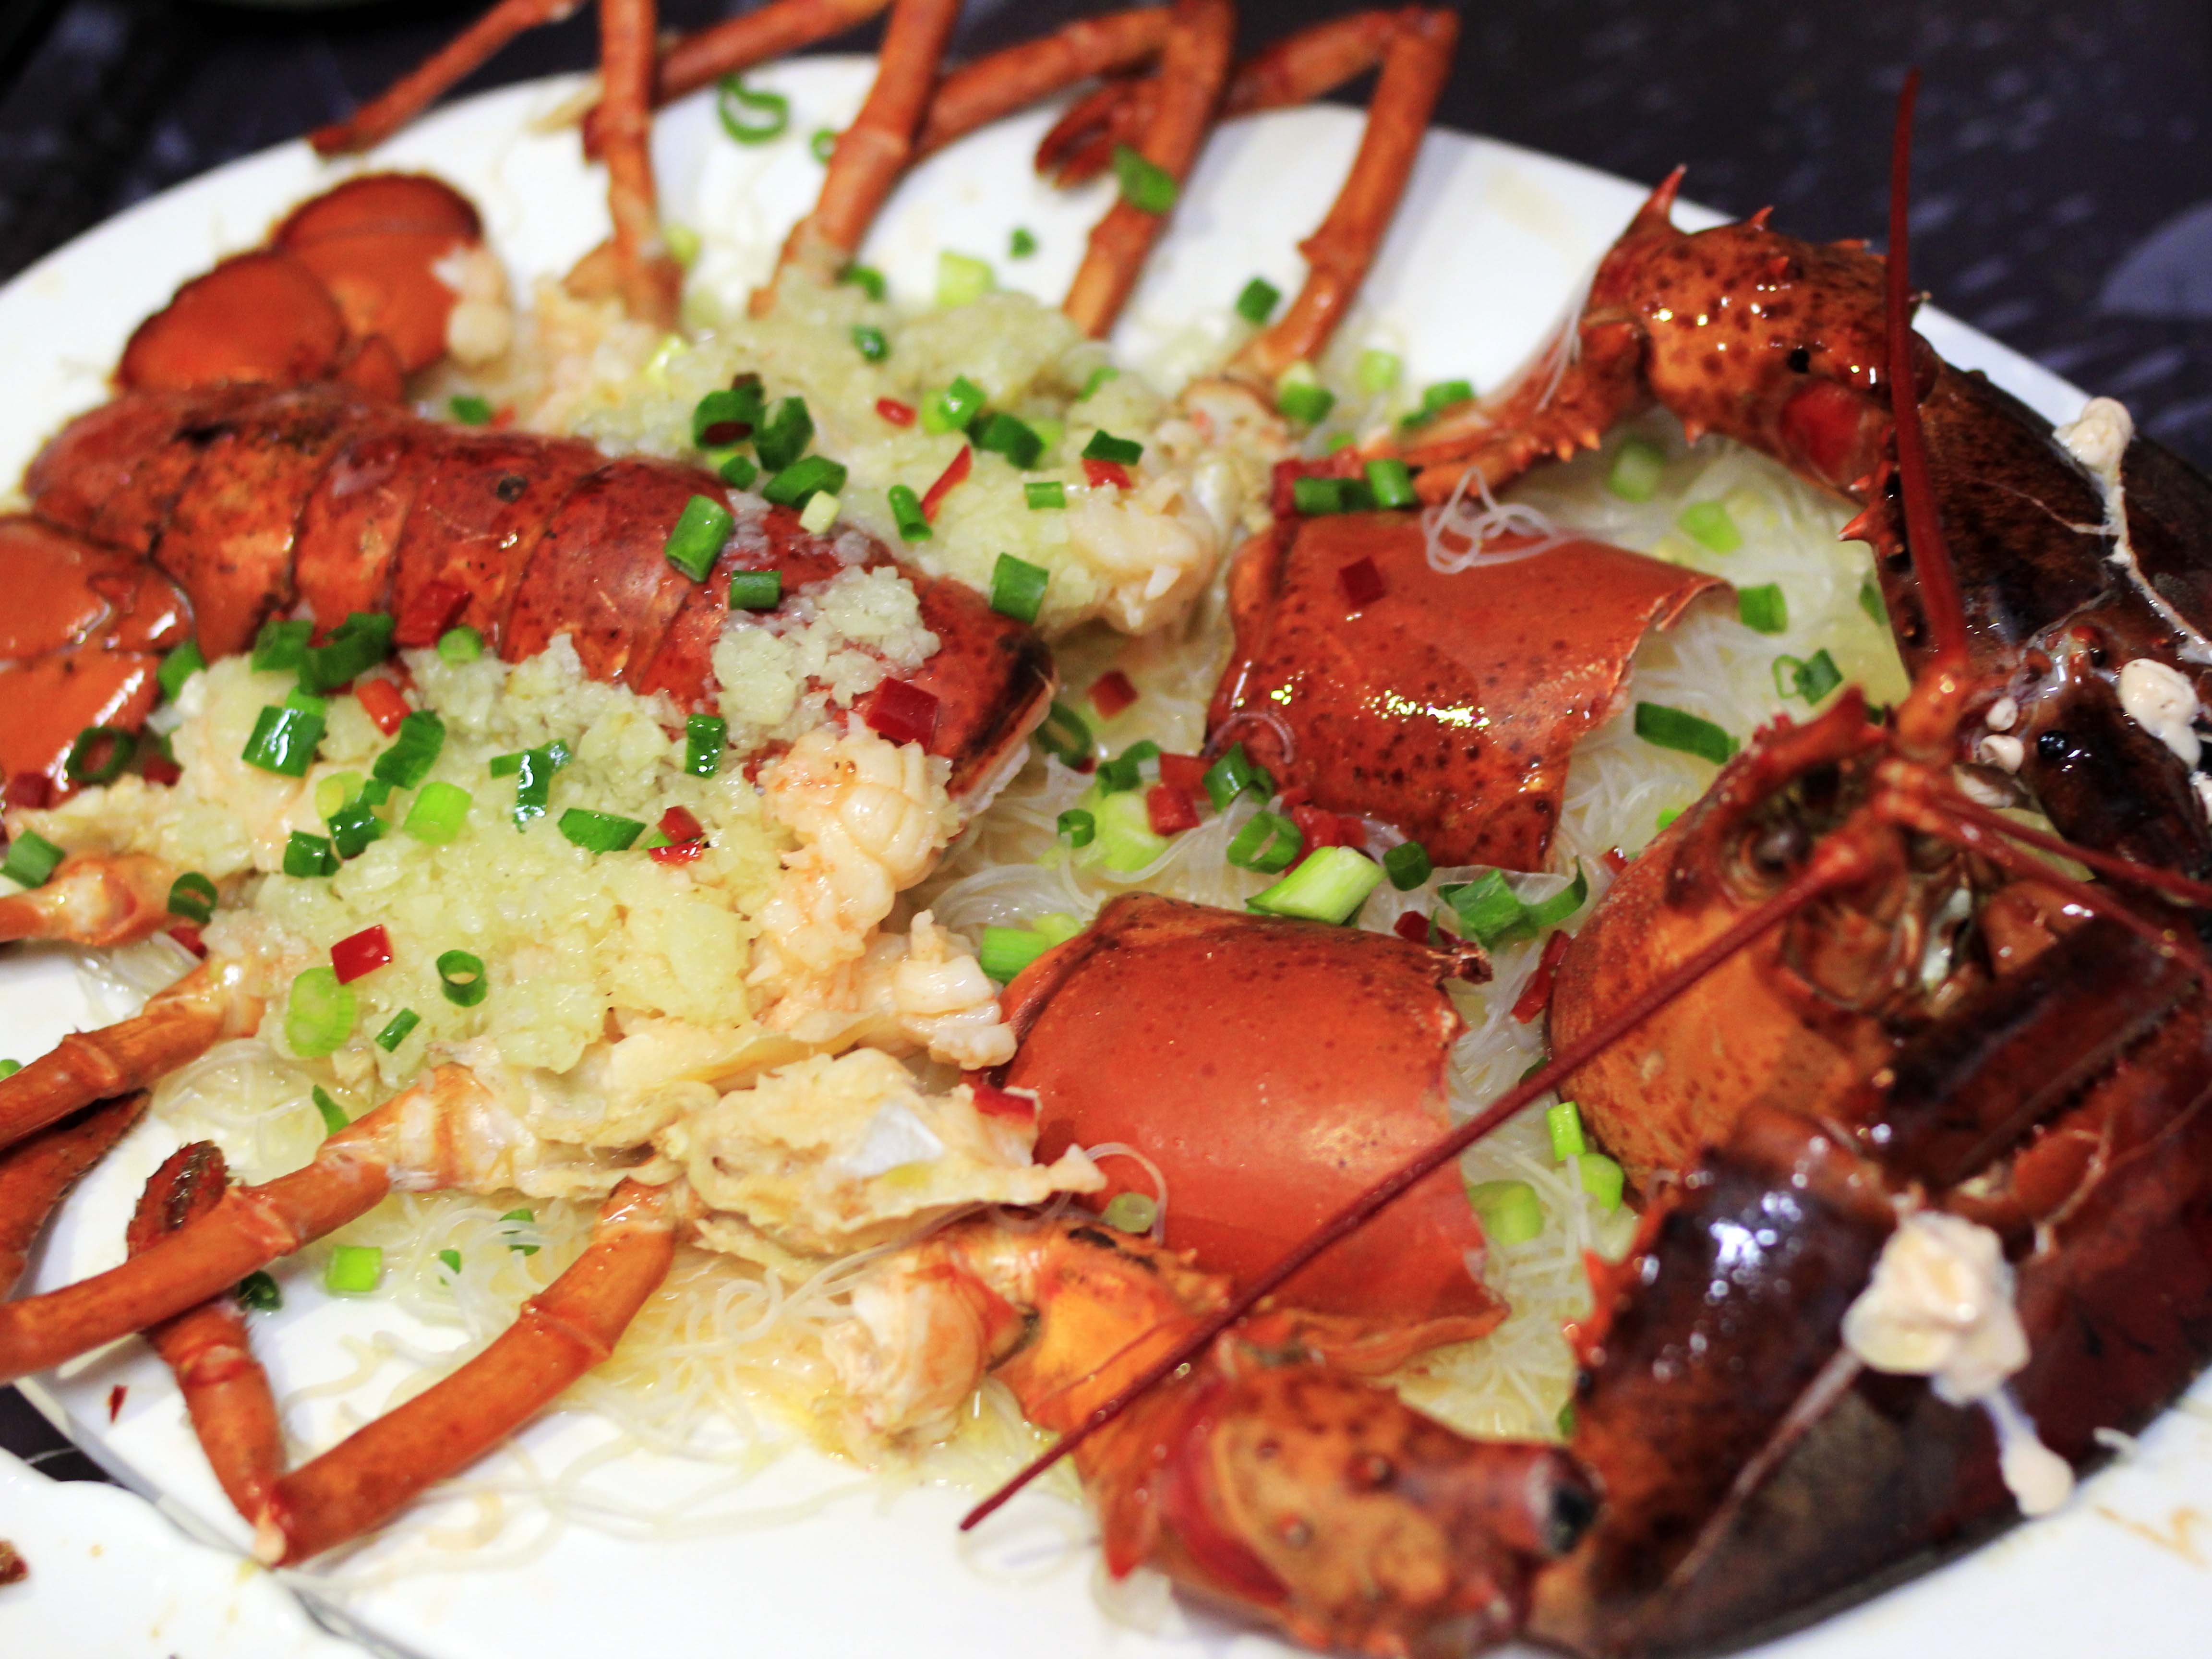 波士顿大龙虾靠海吃海,最新鲜的食材只需要最简单的烹饪龙虾地下铺上